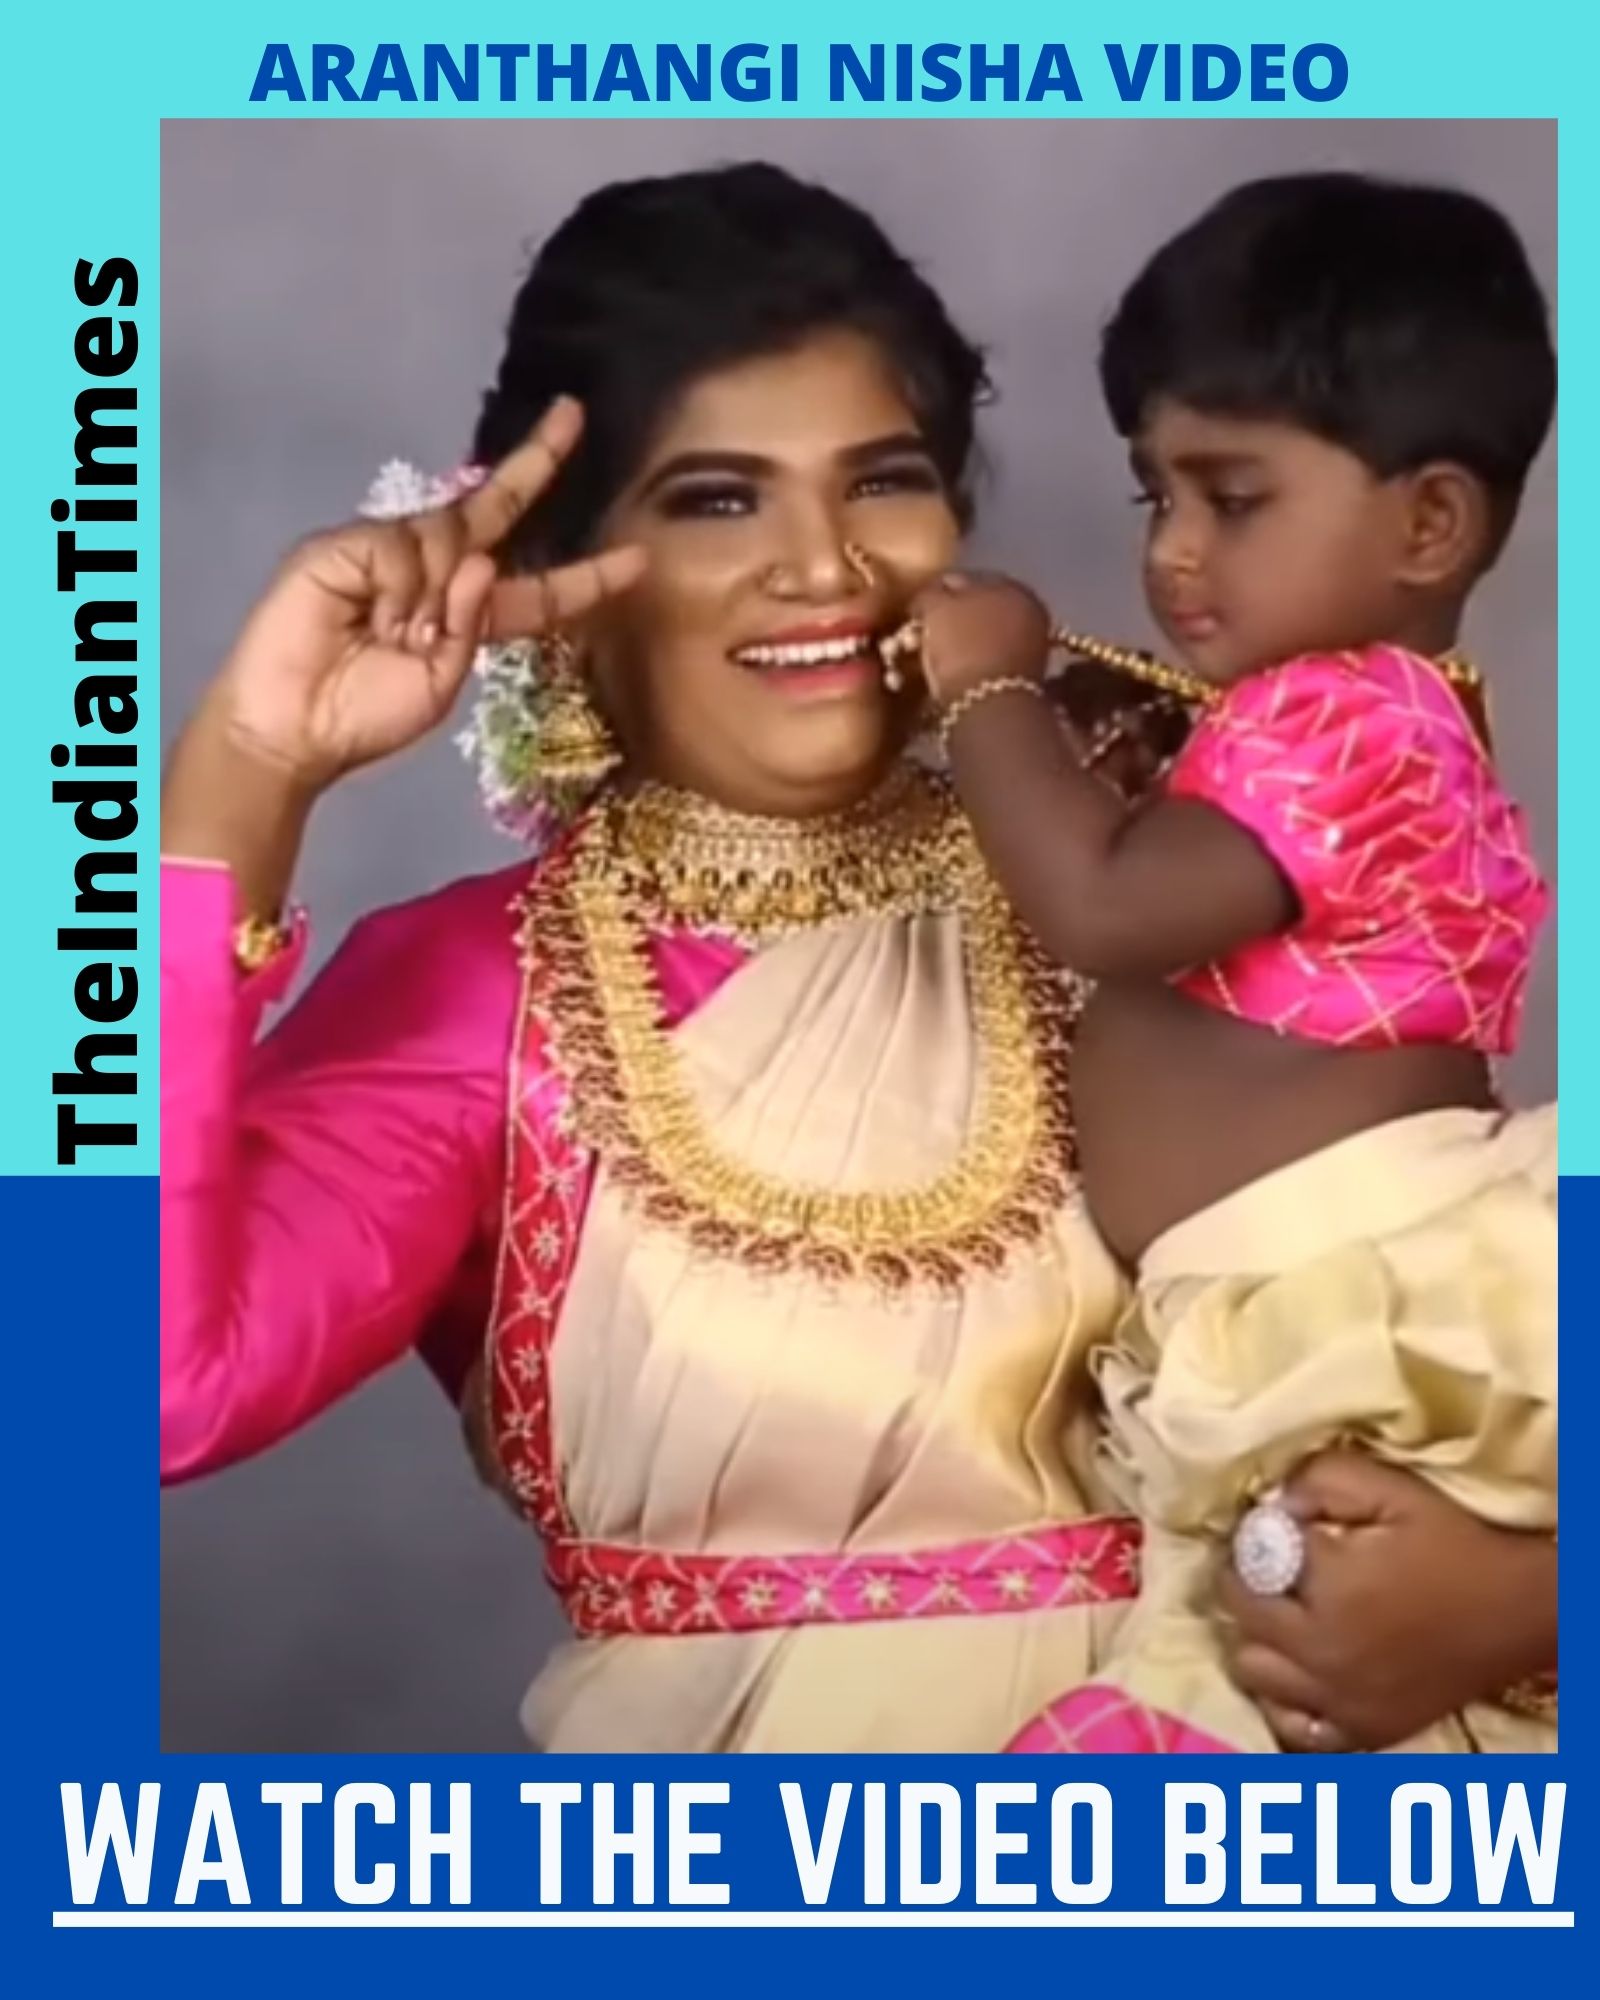 மகளுடன் Cute ஆக குட்டி Dance போட்ட அறந்தாங்கி நிஷா! Viral Video 1